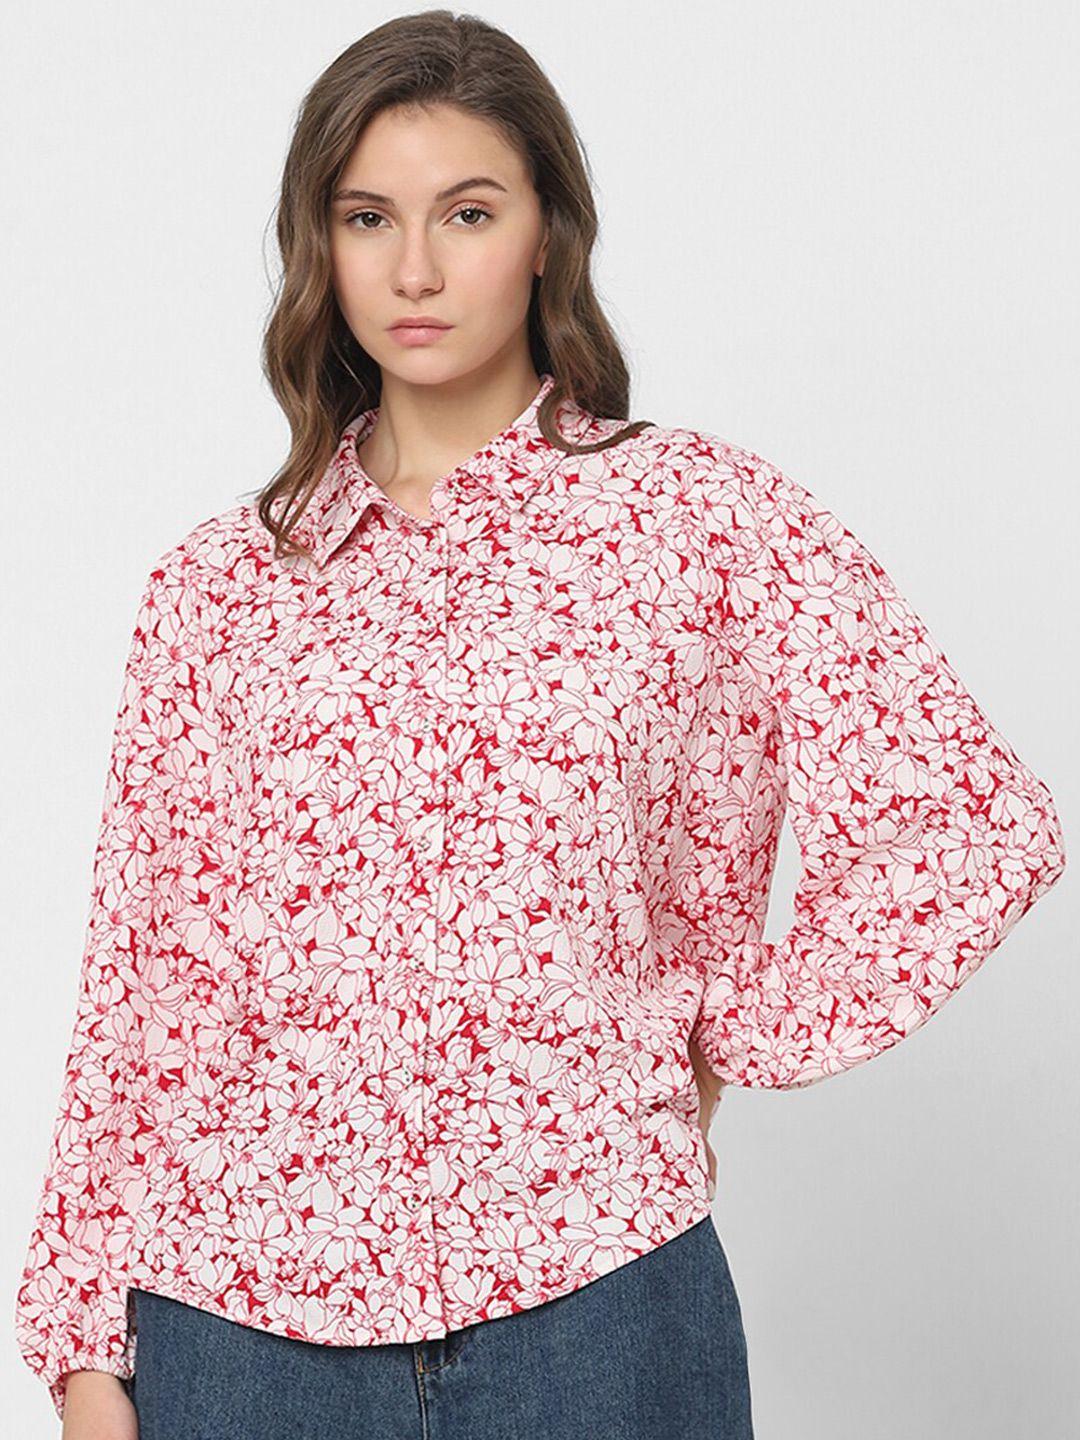 vero moda women floral opaque printed casual shirt